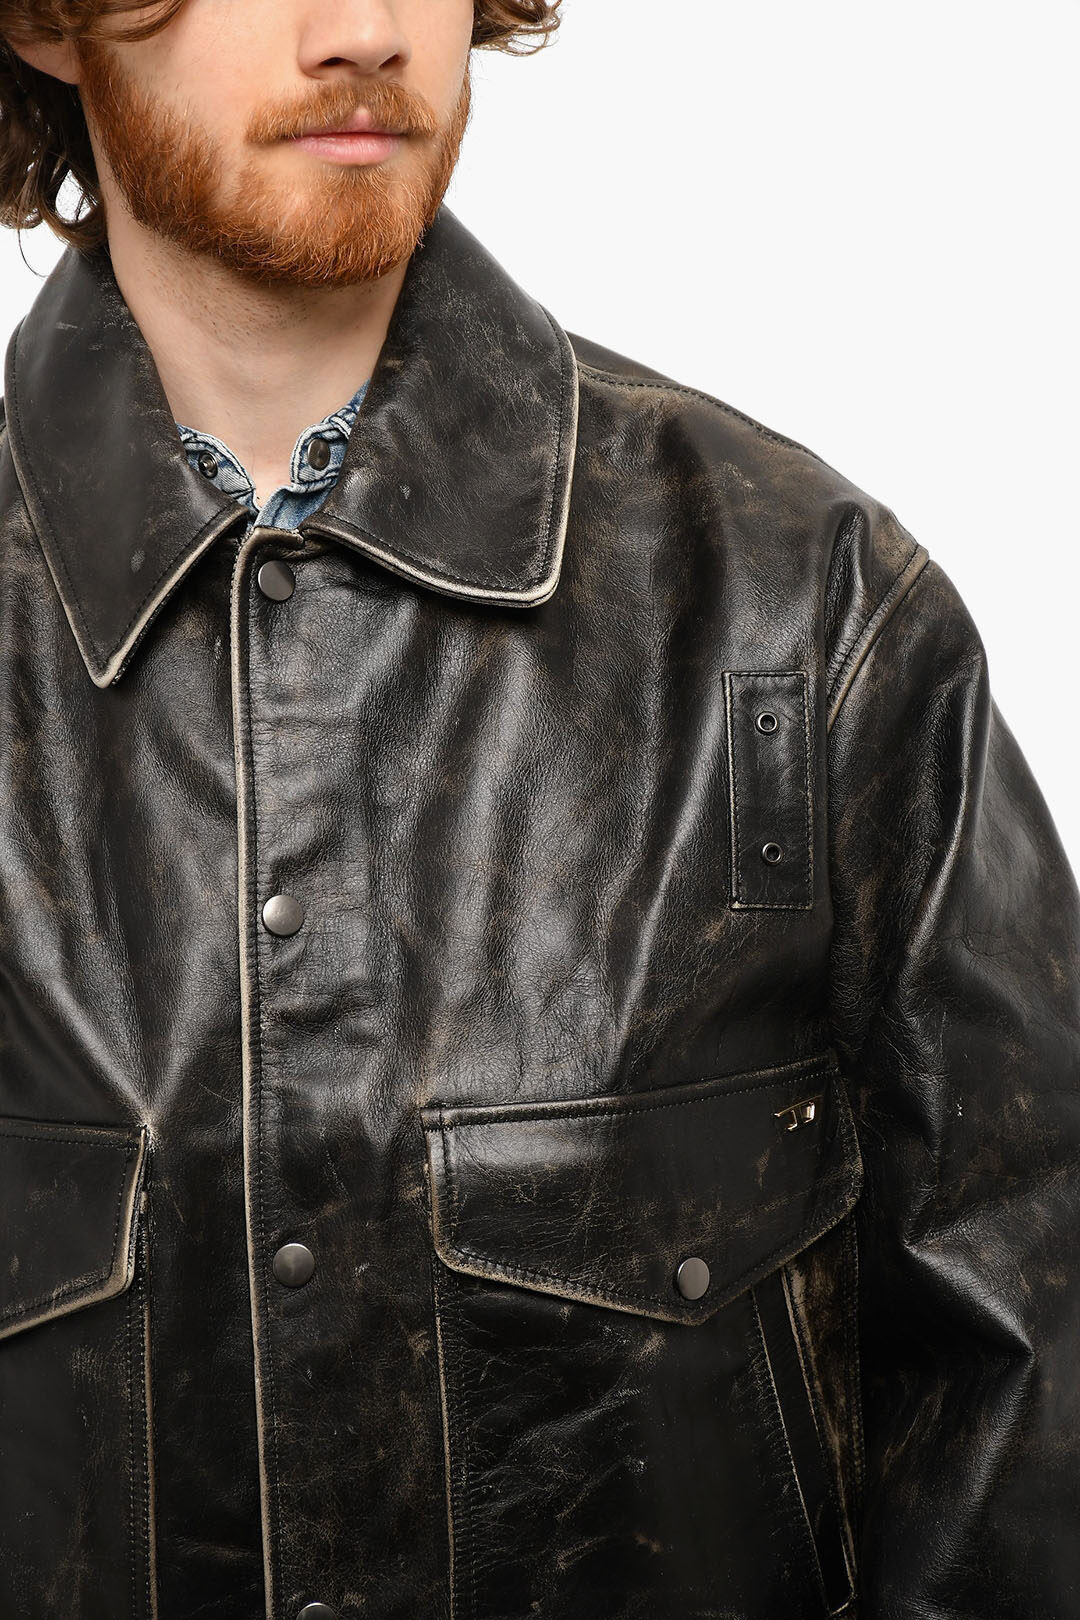 Diesel|Diesel L-Marton Leather Jacket in Black|Chameleon Menswear